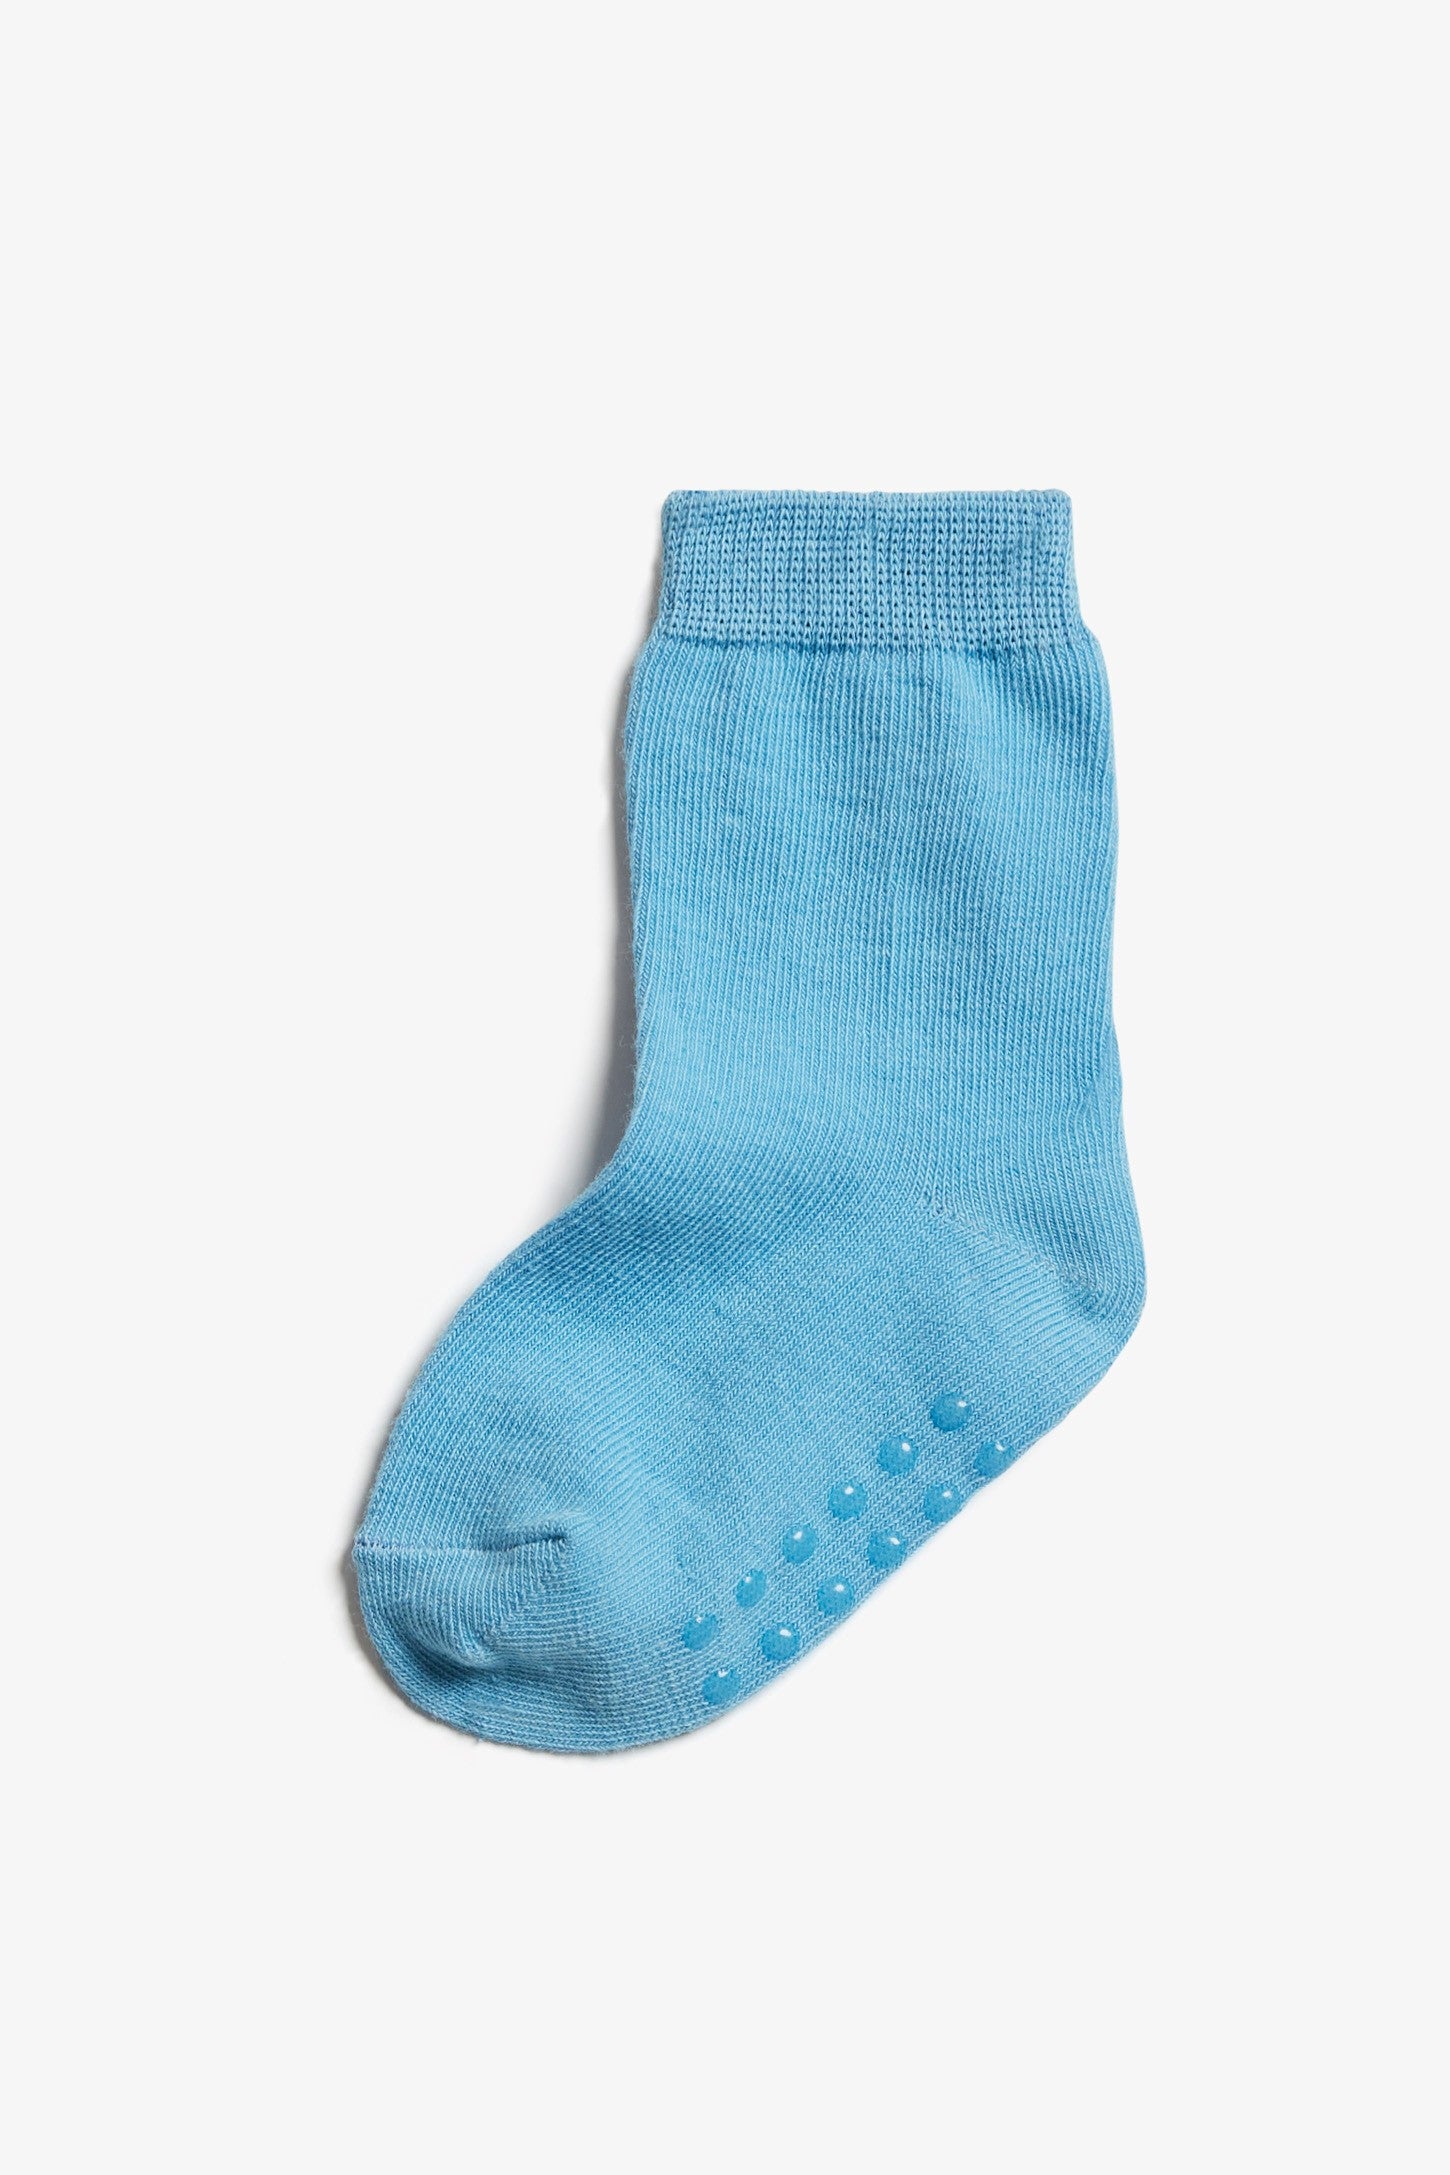 Chaussette antidérapante bébé - Baby Socks™ (lots de 2chaussettes)